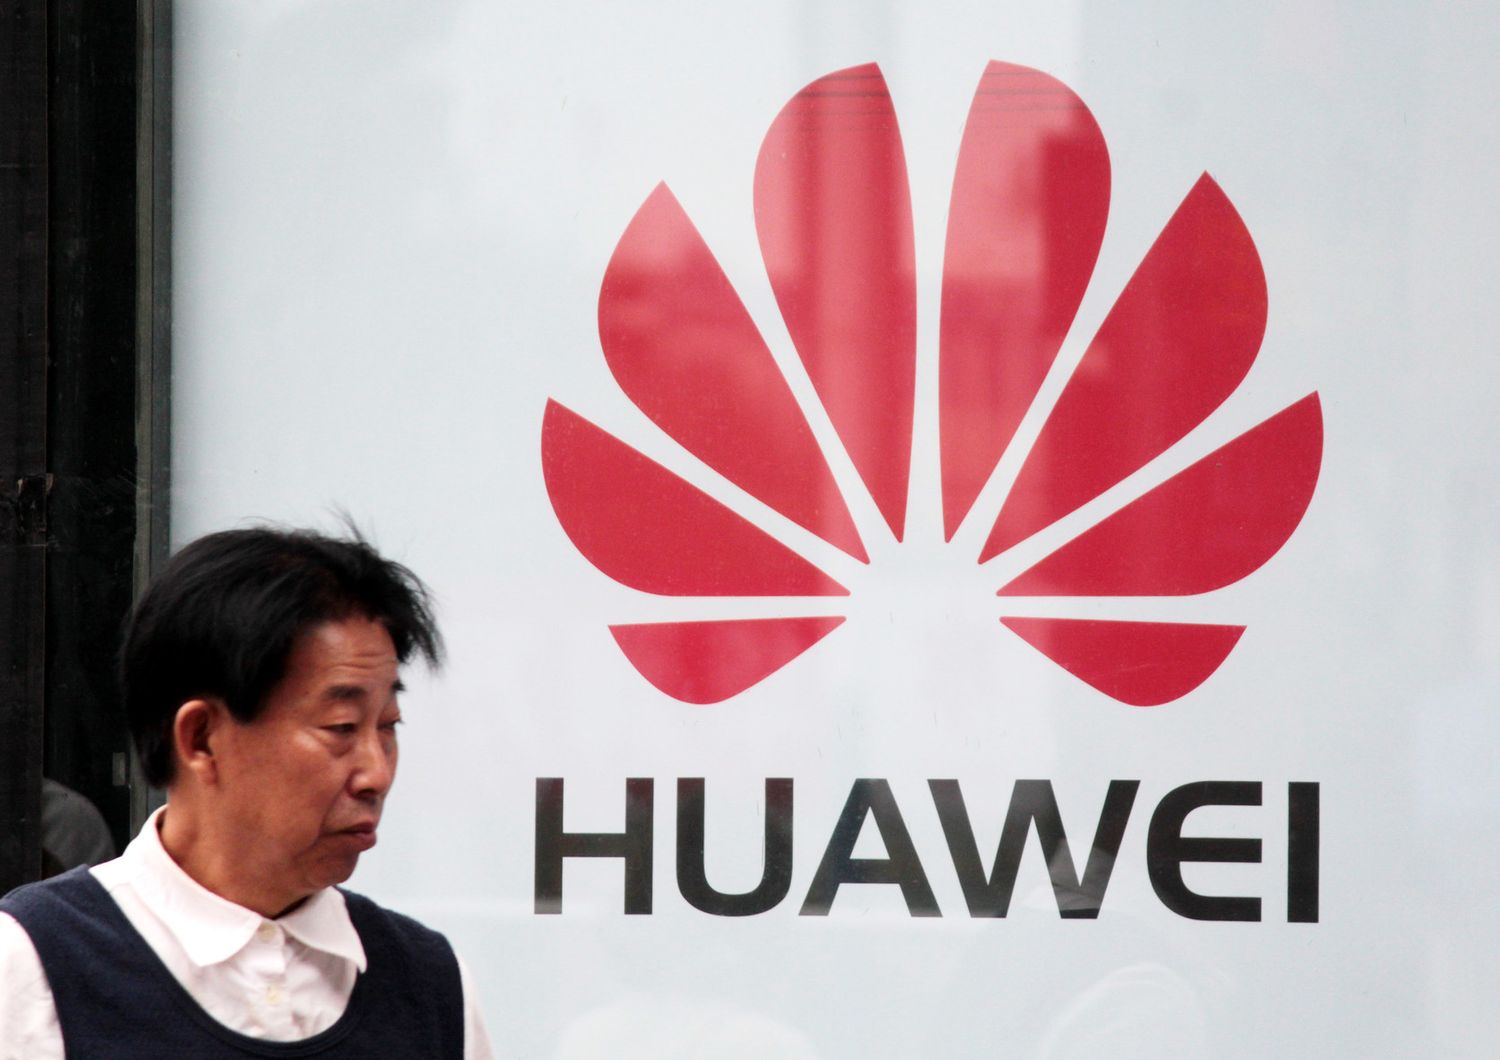 Huawei&nbsp;fa causa agli Stati Uniti: le ragioni dello scontro &nbsp;